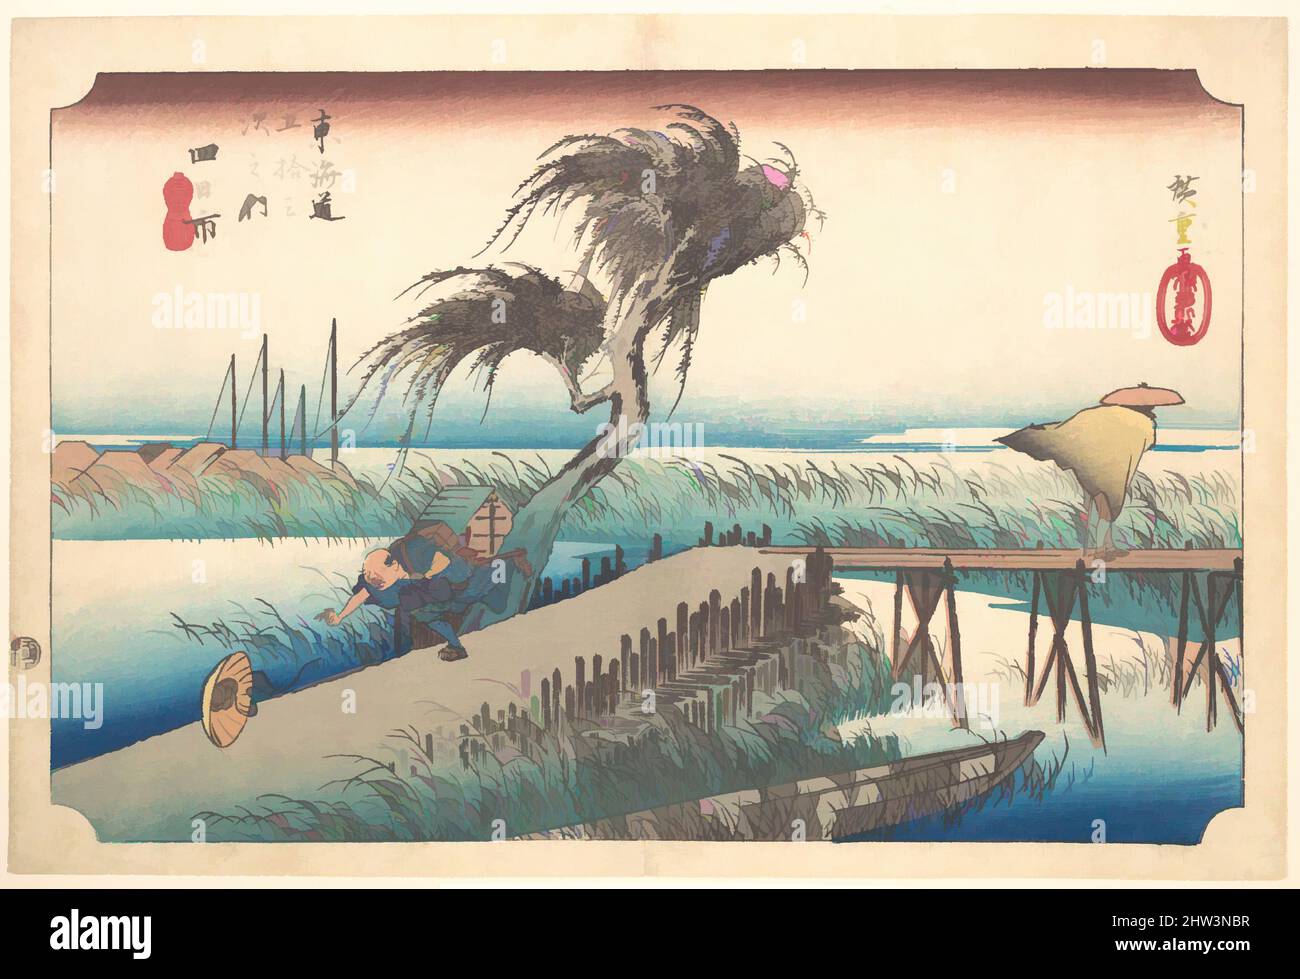 Art inspiré par 東海道五十三次之内 四日市 三重川, Mie River à Yokkaichi, époque Edo (1615–1868), 1834, Japon, imprimé polychrome sur bois; encre et couleur sur papier, 8 7/8 x 13 3/4 cm (22,5 x 34,9 cm), estampes, Utagawa Hiroshige (japonais, Tokyo (Edo) 1797–1858 Tokyo (Edo, œuvres classiques modernisées par Artotop avec une touche de modernité. Formes, couleur et valeur, impact visuel accrocheur sur l'art émotions par la liberté d'œuvres d'art d'une manière contemporaine. Un message intemporel qui cherche une nouvelle direction créative. Artistes qui se tournent vers le support numérique et créent le NFT Artotop Banque D'Images